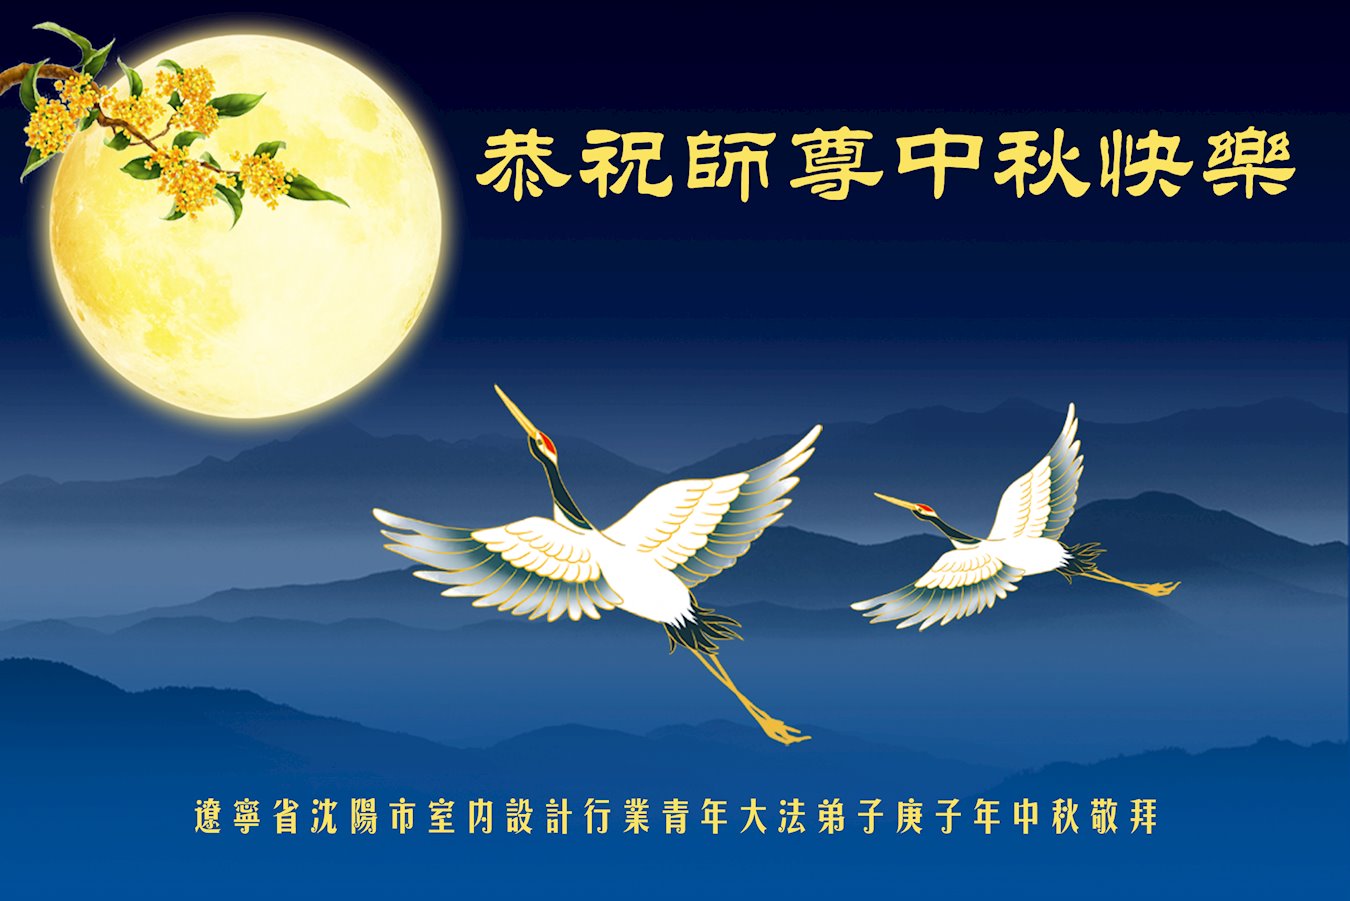 Image for article Practicantes de más de 40 profesiones desean al fundador de Falun Dafa un Feliz Festival de la Luna